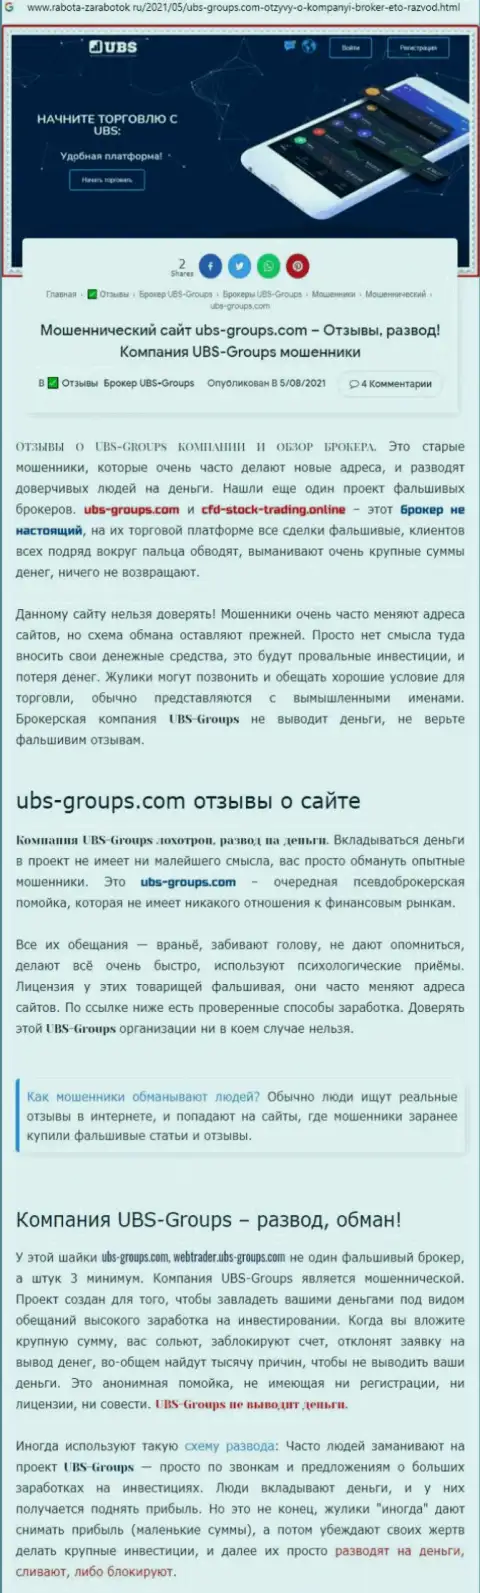 Автор отзыва заявляет, что UBS Groups - это ВОРЮГИ !!!